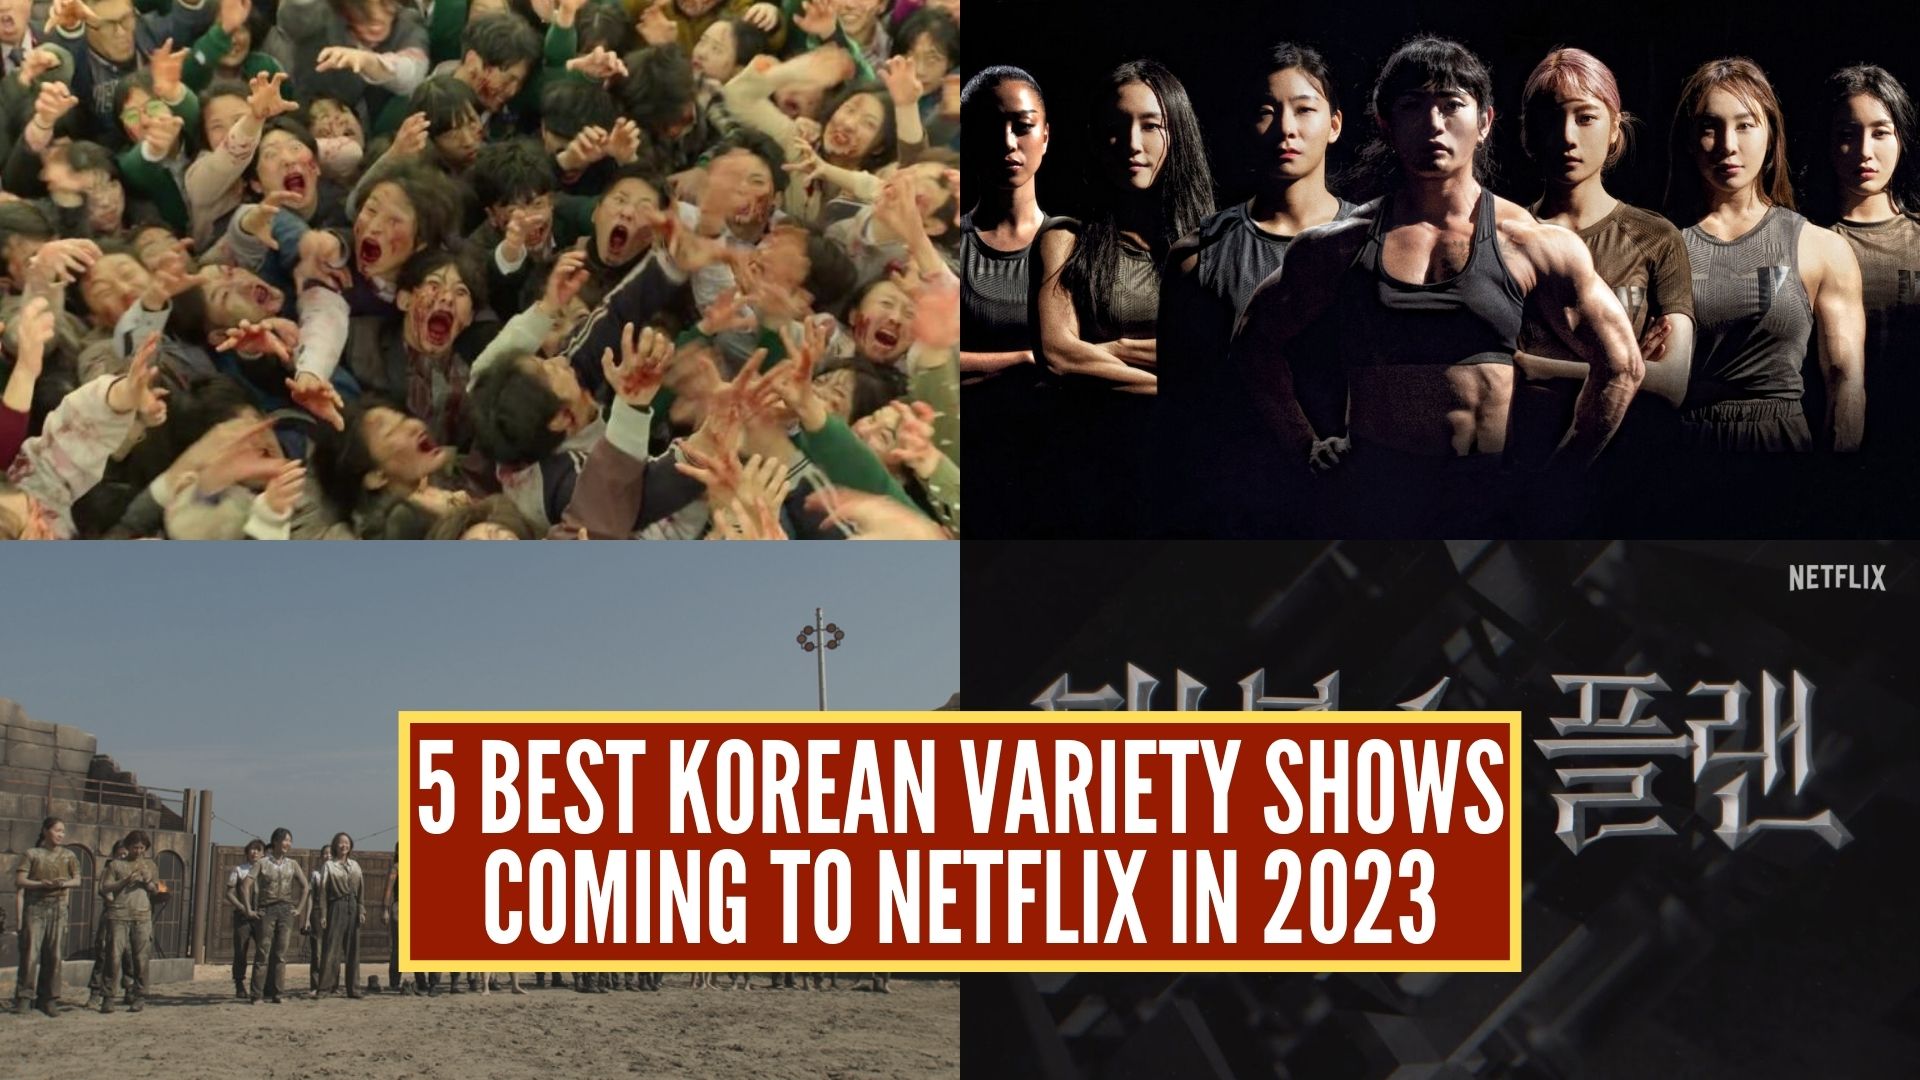 Korean variety shows